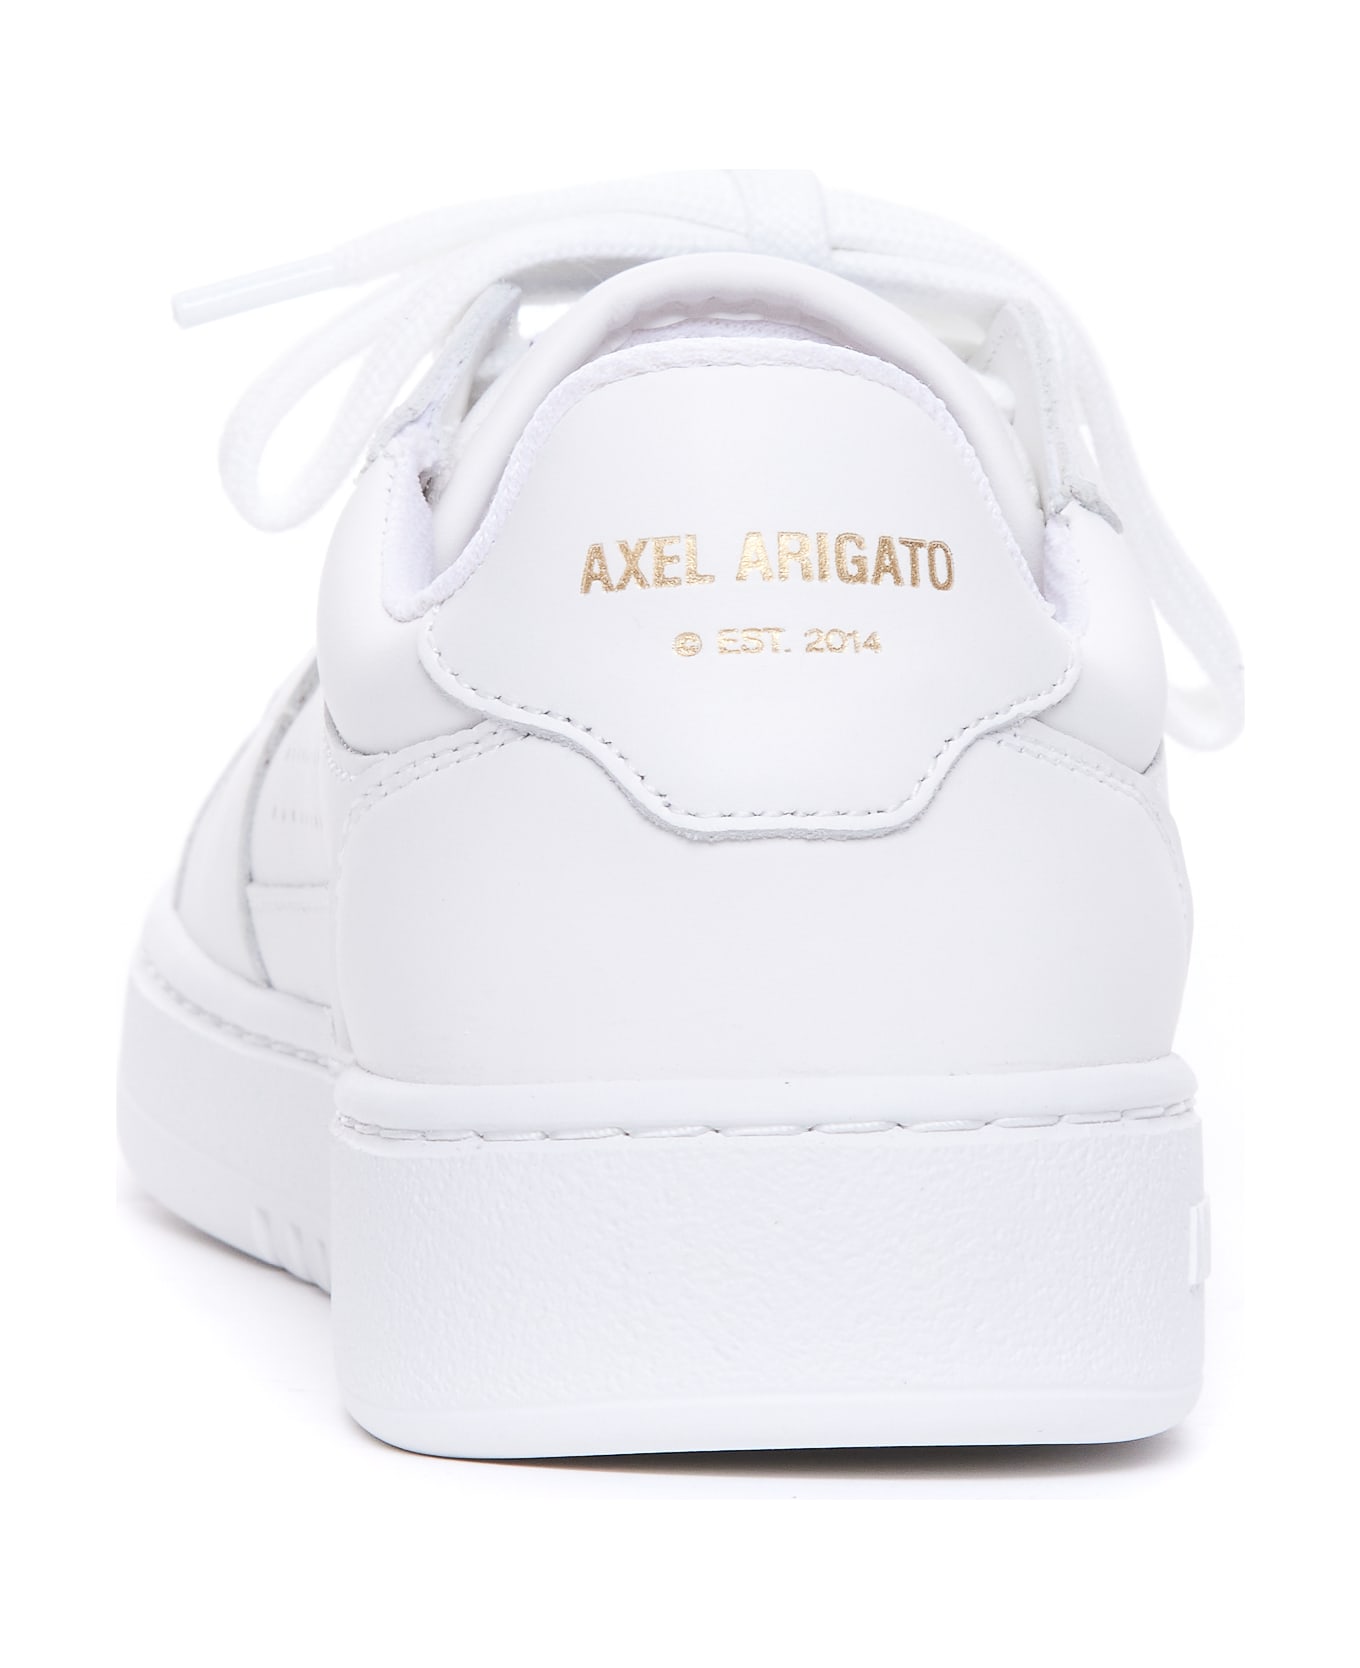 Axel Arigato Dice Lo Sneakers - White